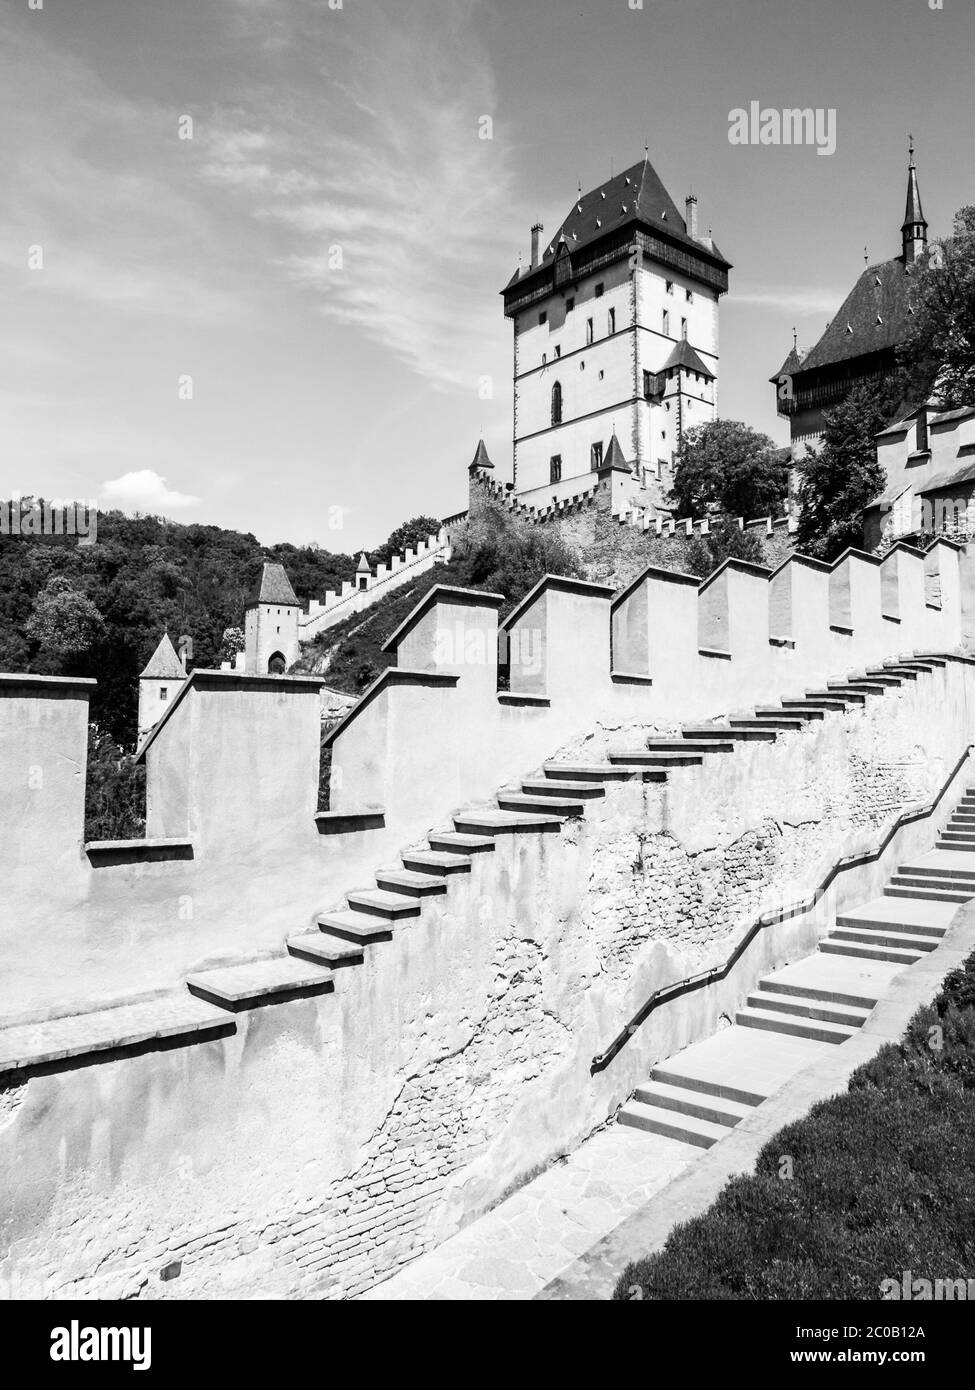 Castello reale di Karlstejn, castello gotico medievale con mura di fortificazione in estate soleggiato giorno. Repubblica Ceca. Immagine in bianco e nero. Foto Stock